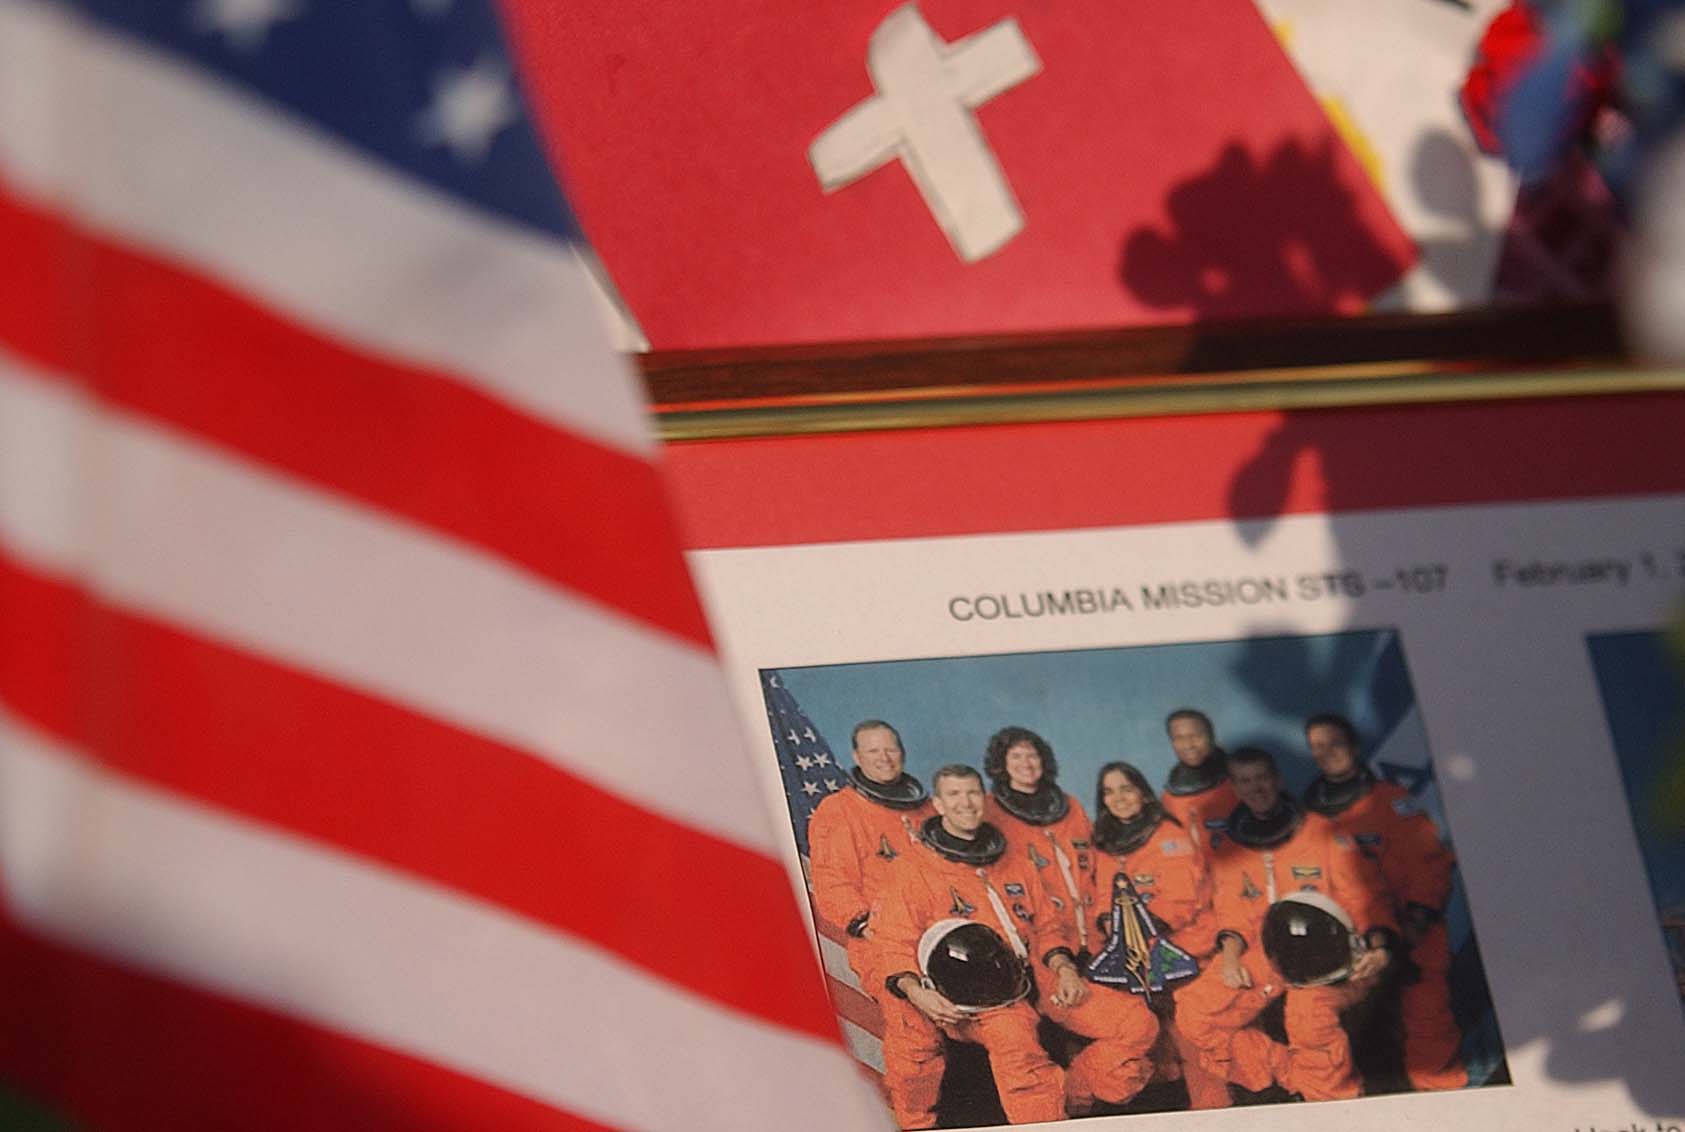 Se împlinesc 20 de ani de la explozia navetei Columbia, o tragedie care a curmat viaţa a şapte astronauţi | VIDEO ȘOCANT - Imaginea 5